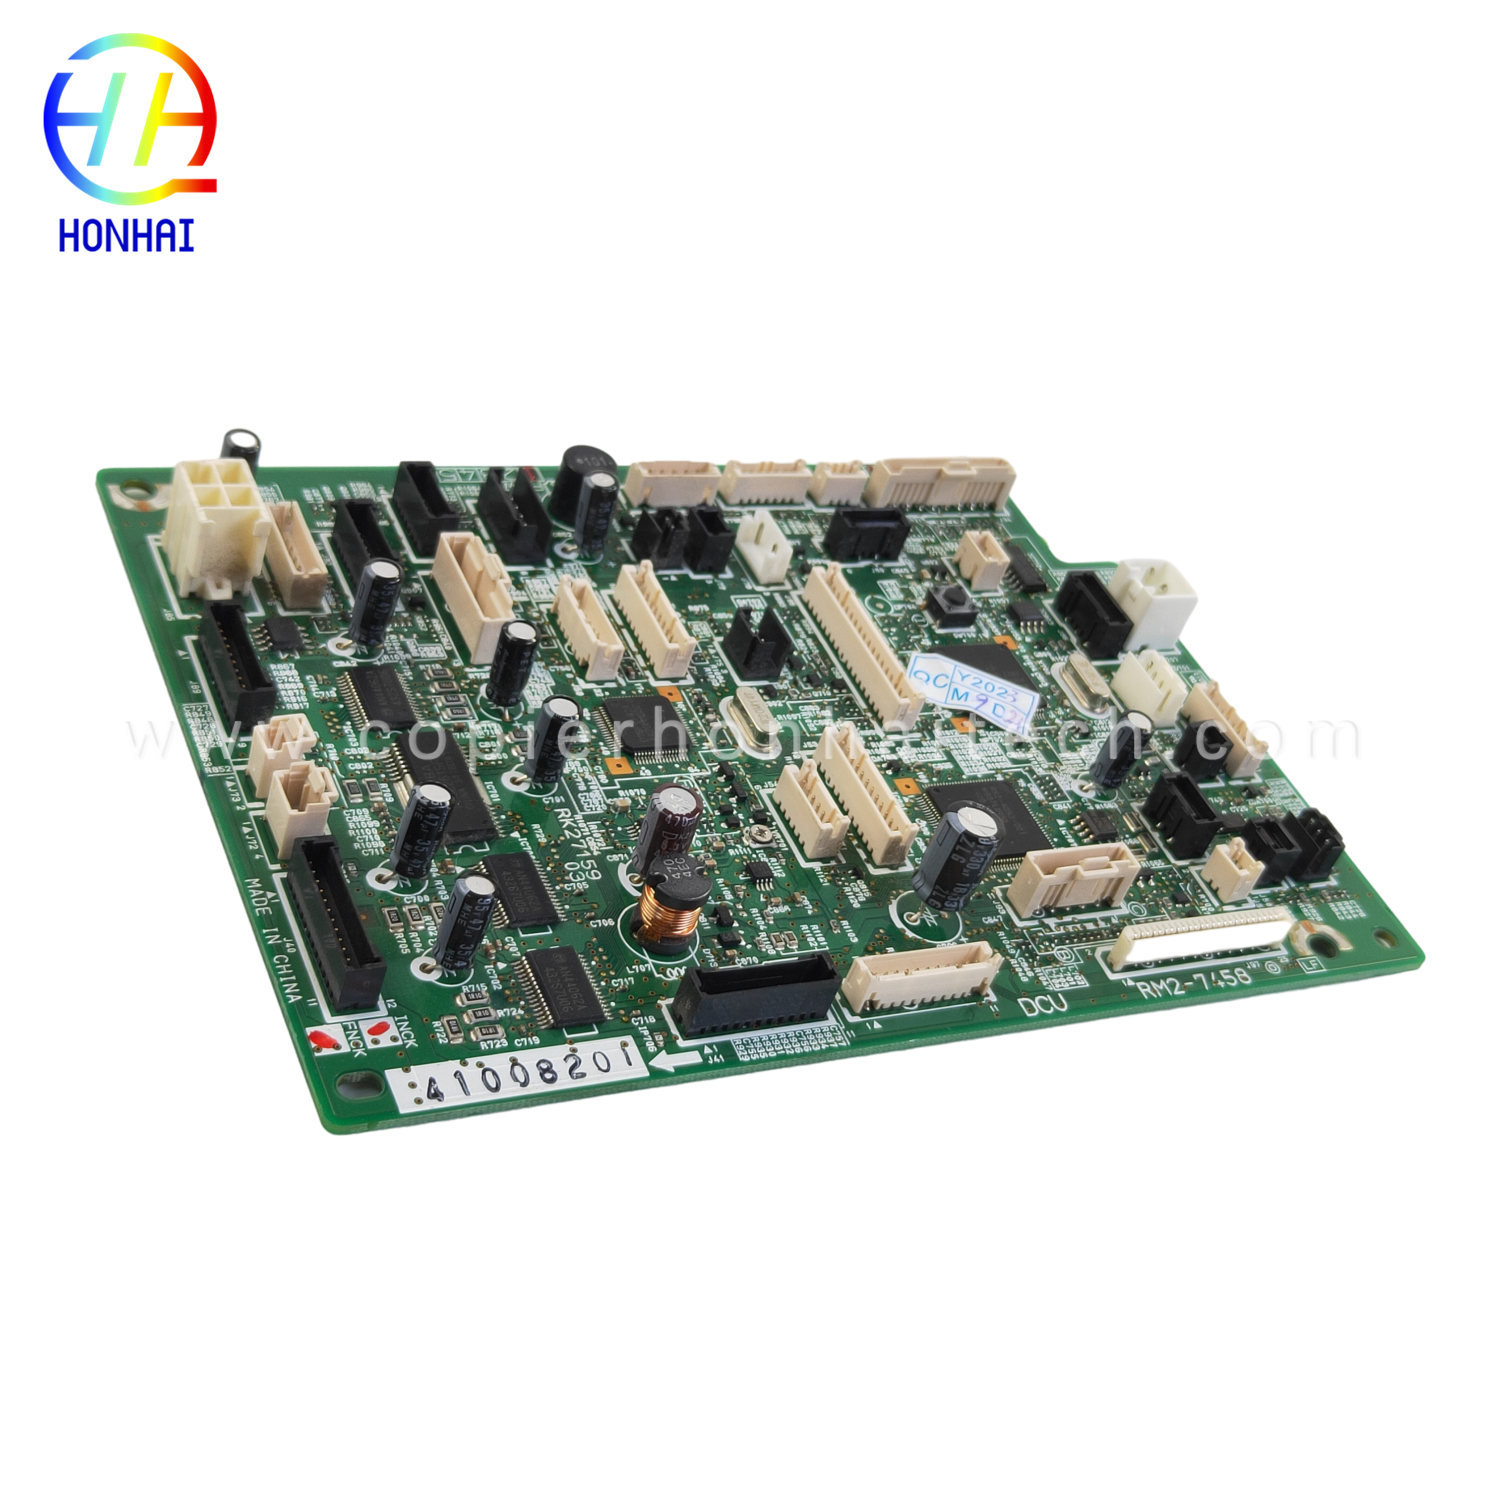 https://www.copierhonhaitech.com/dc-controller-assembly-for-hp-laserjet-enterprise-m630-rm2-7458-000-printer-product/